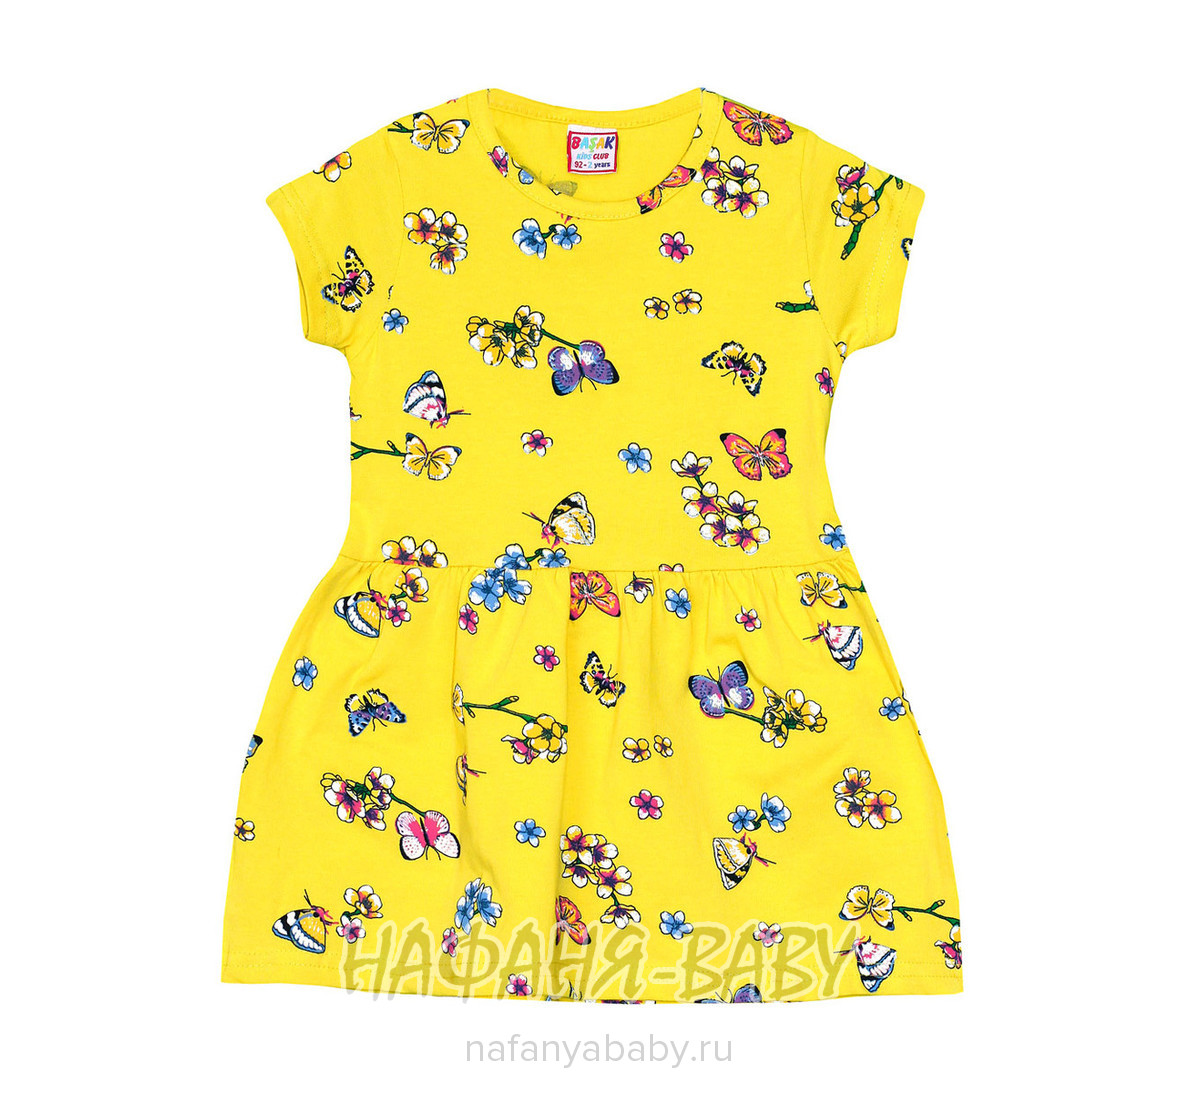 Детское трикотажное платье BASAK, купить в интернет магазине Нафаня. арт: 2248.